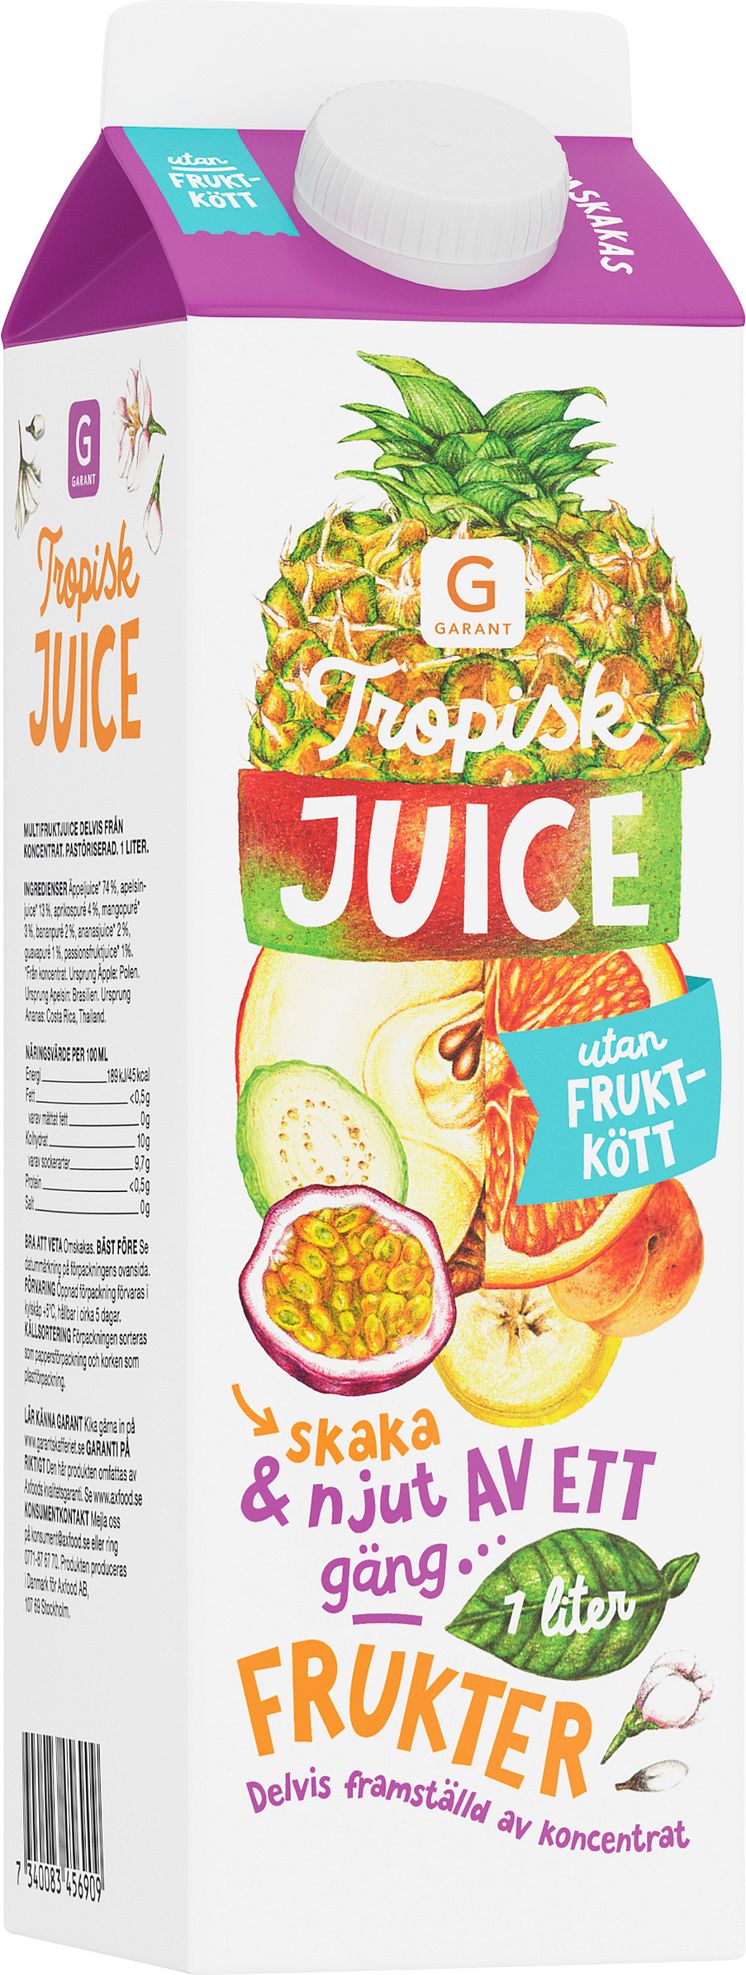 Garant tropisk juice utan fruktkött 1 liter